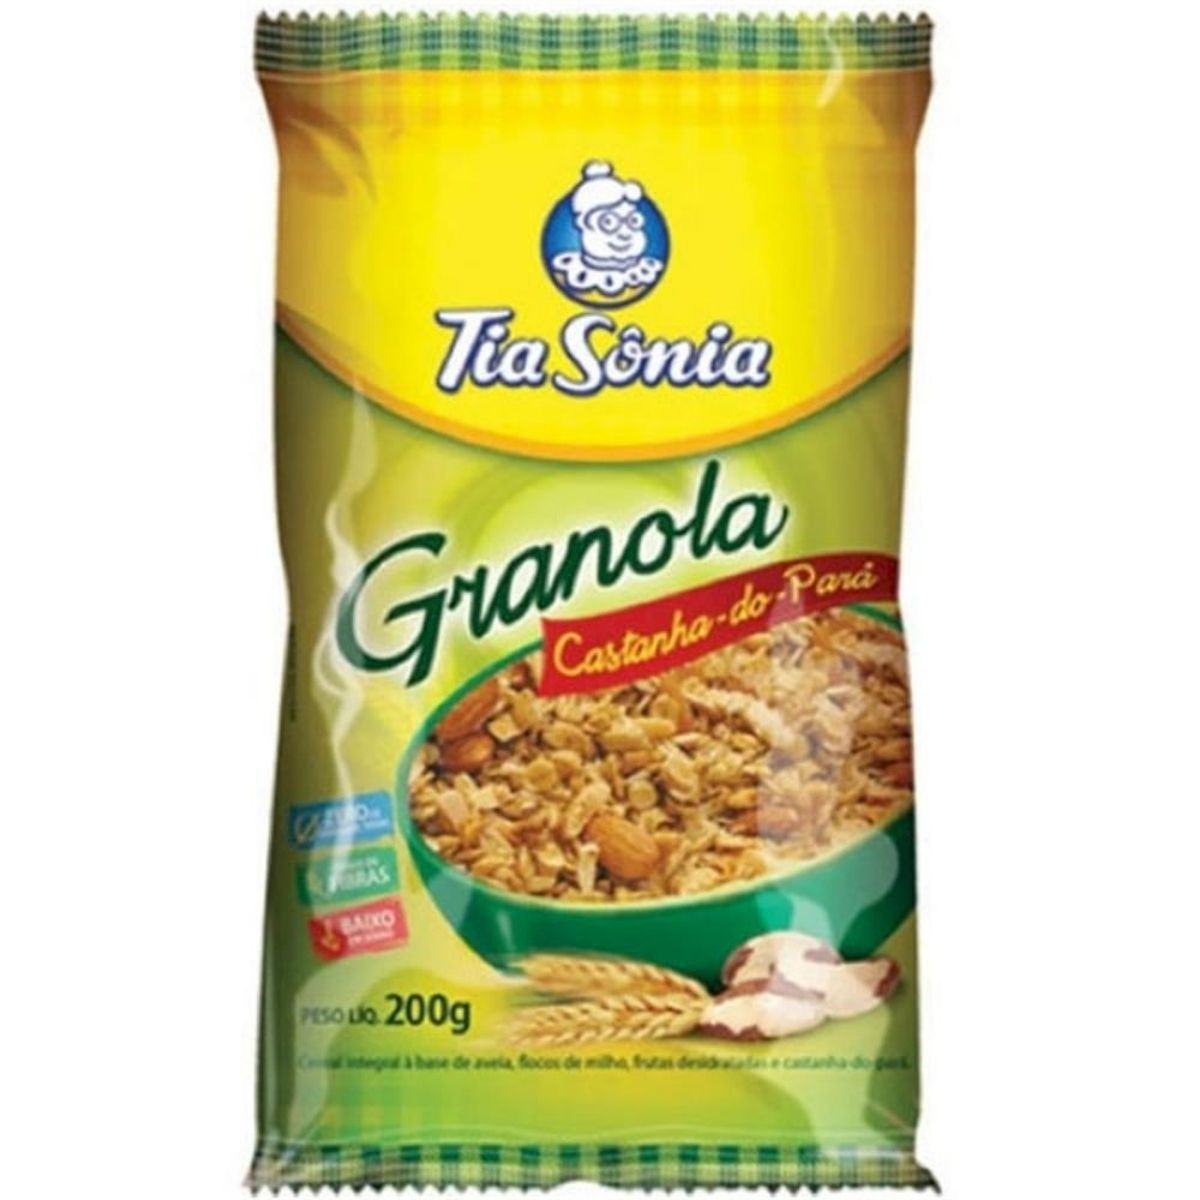 granola-castanha-do-para-tia-sonia-200g-1.jpg